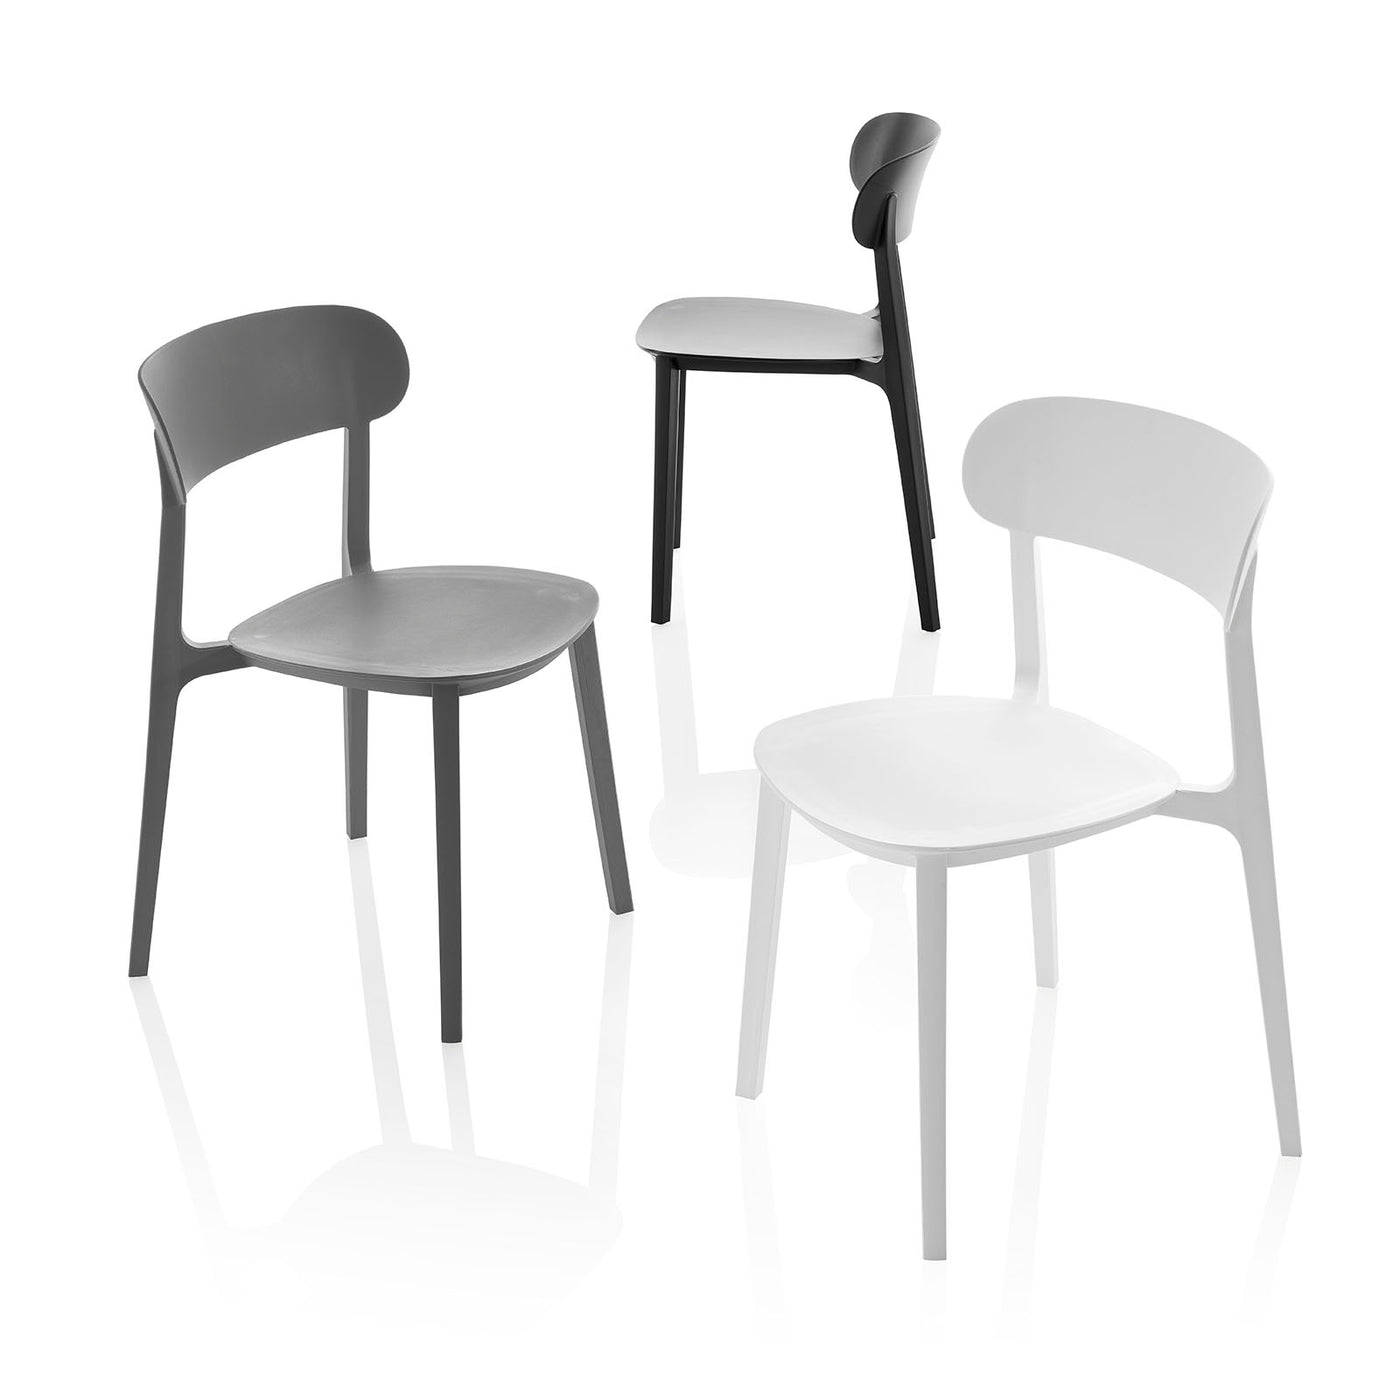 Set of 4 indoor/outdoor chairs LUNA grey